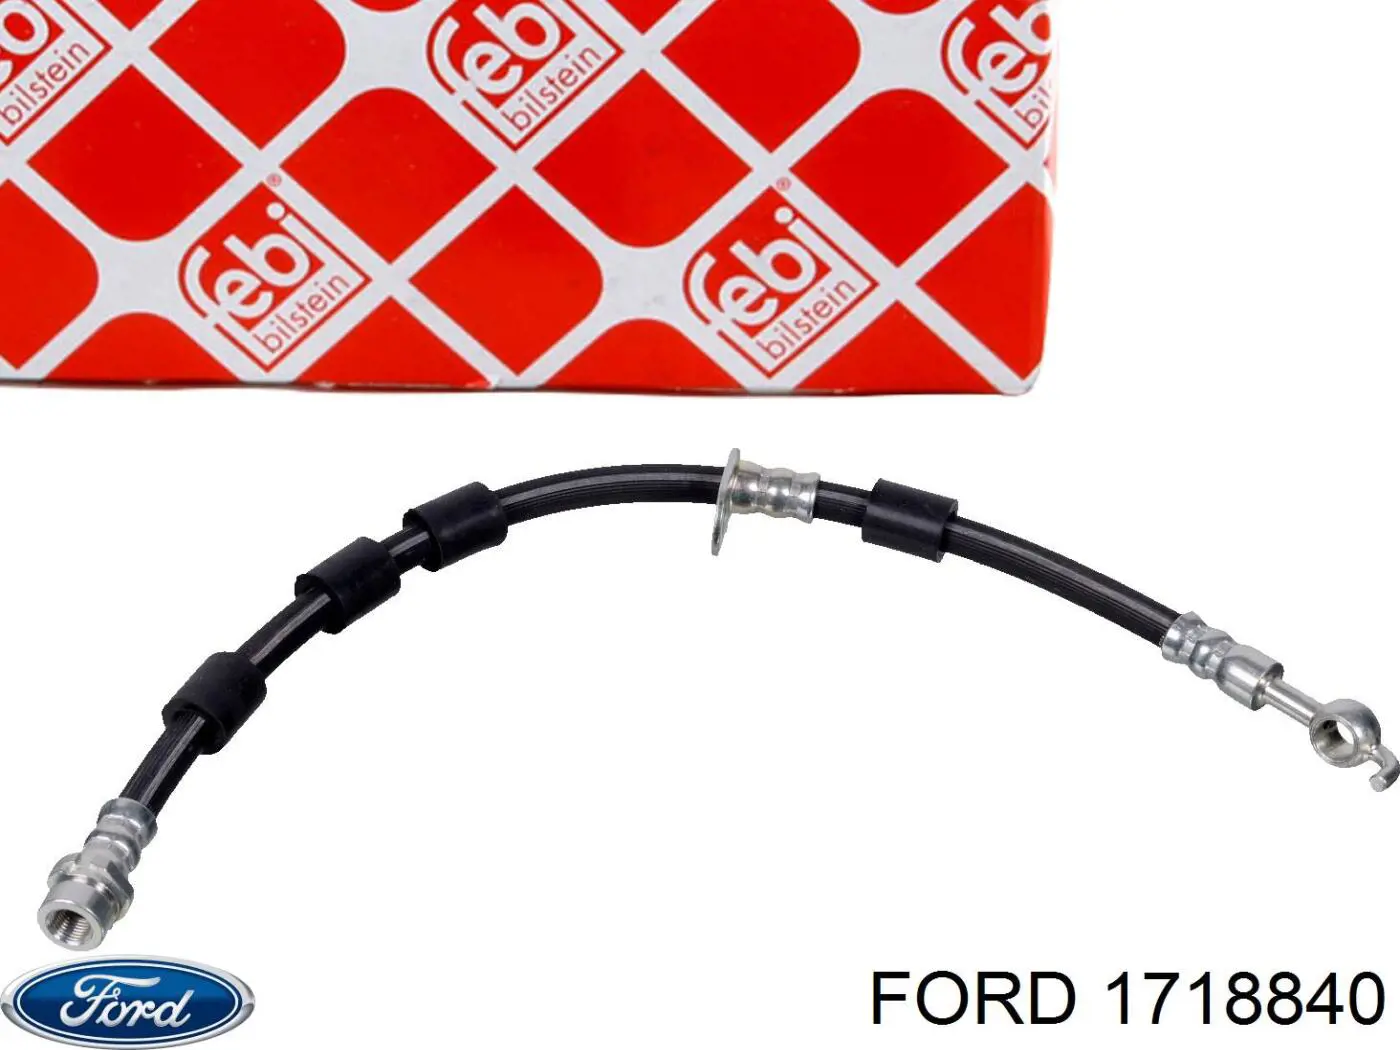 Tubo flexible de frenos delantero derecho para Ford Fiesta 